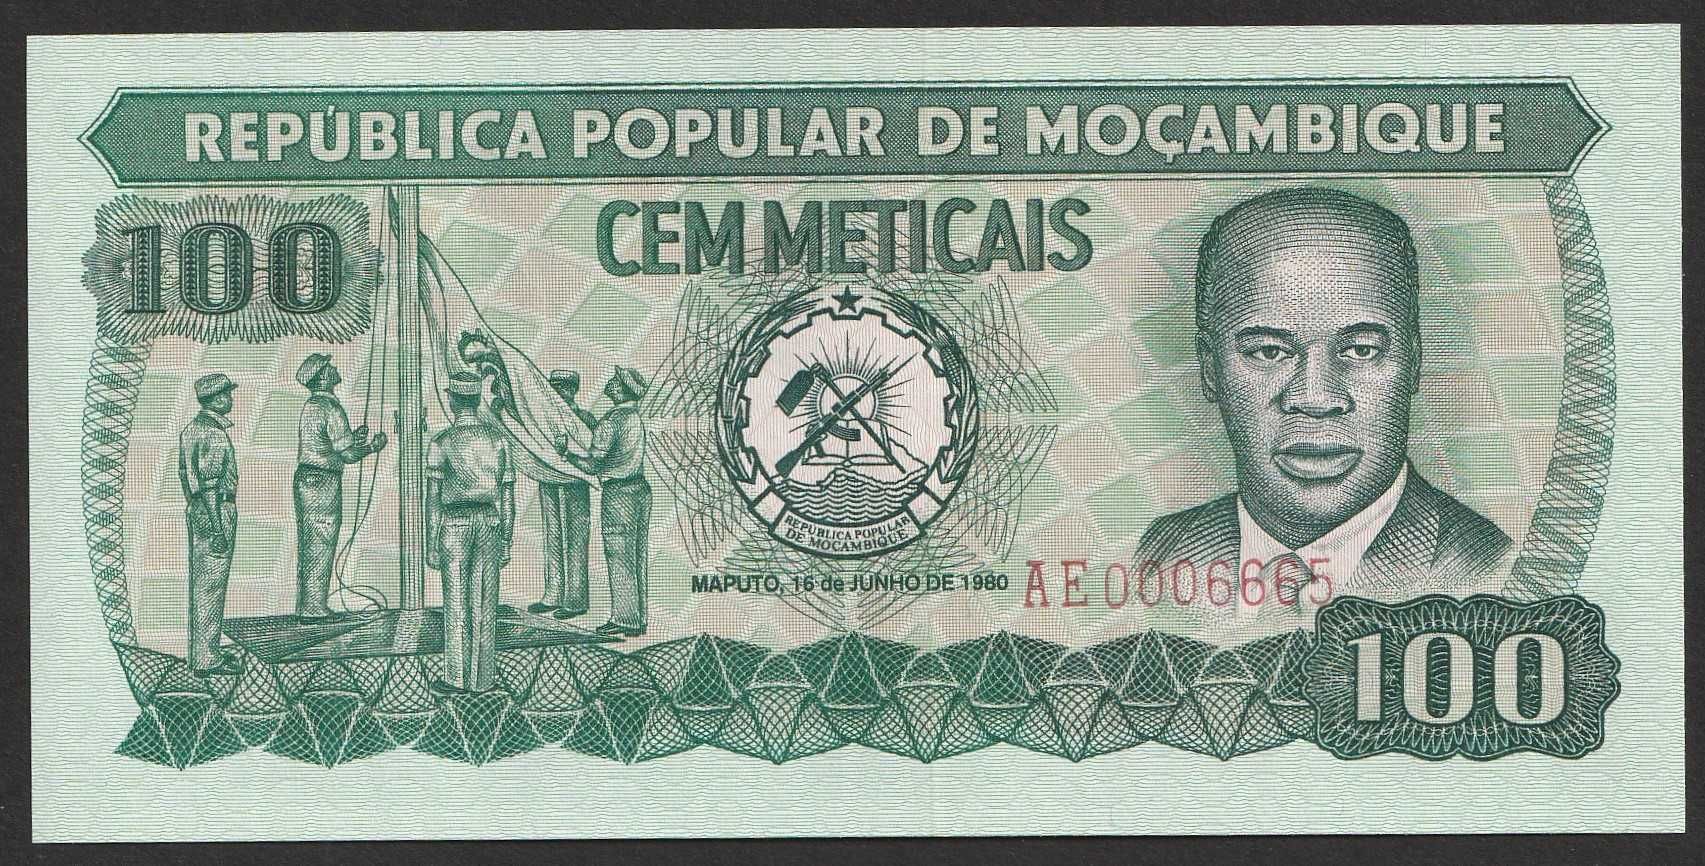 Mozambik 100 meticais 1980 - AE - stan bankowy UNC